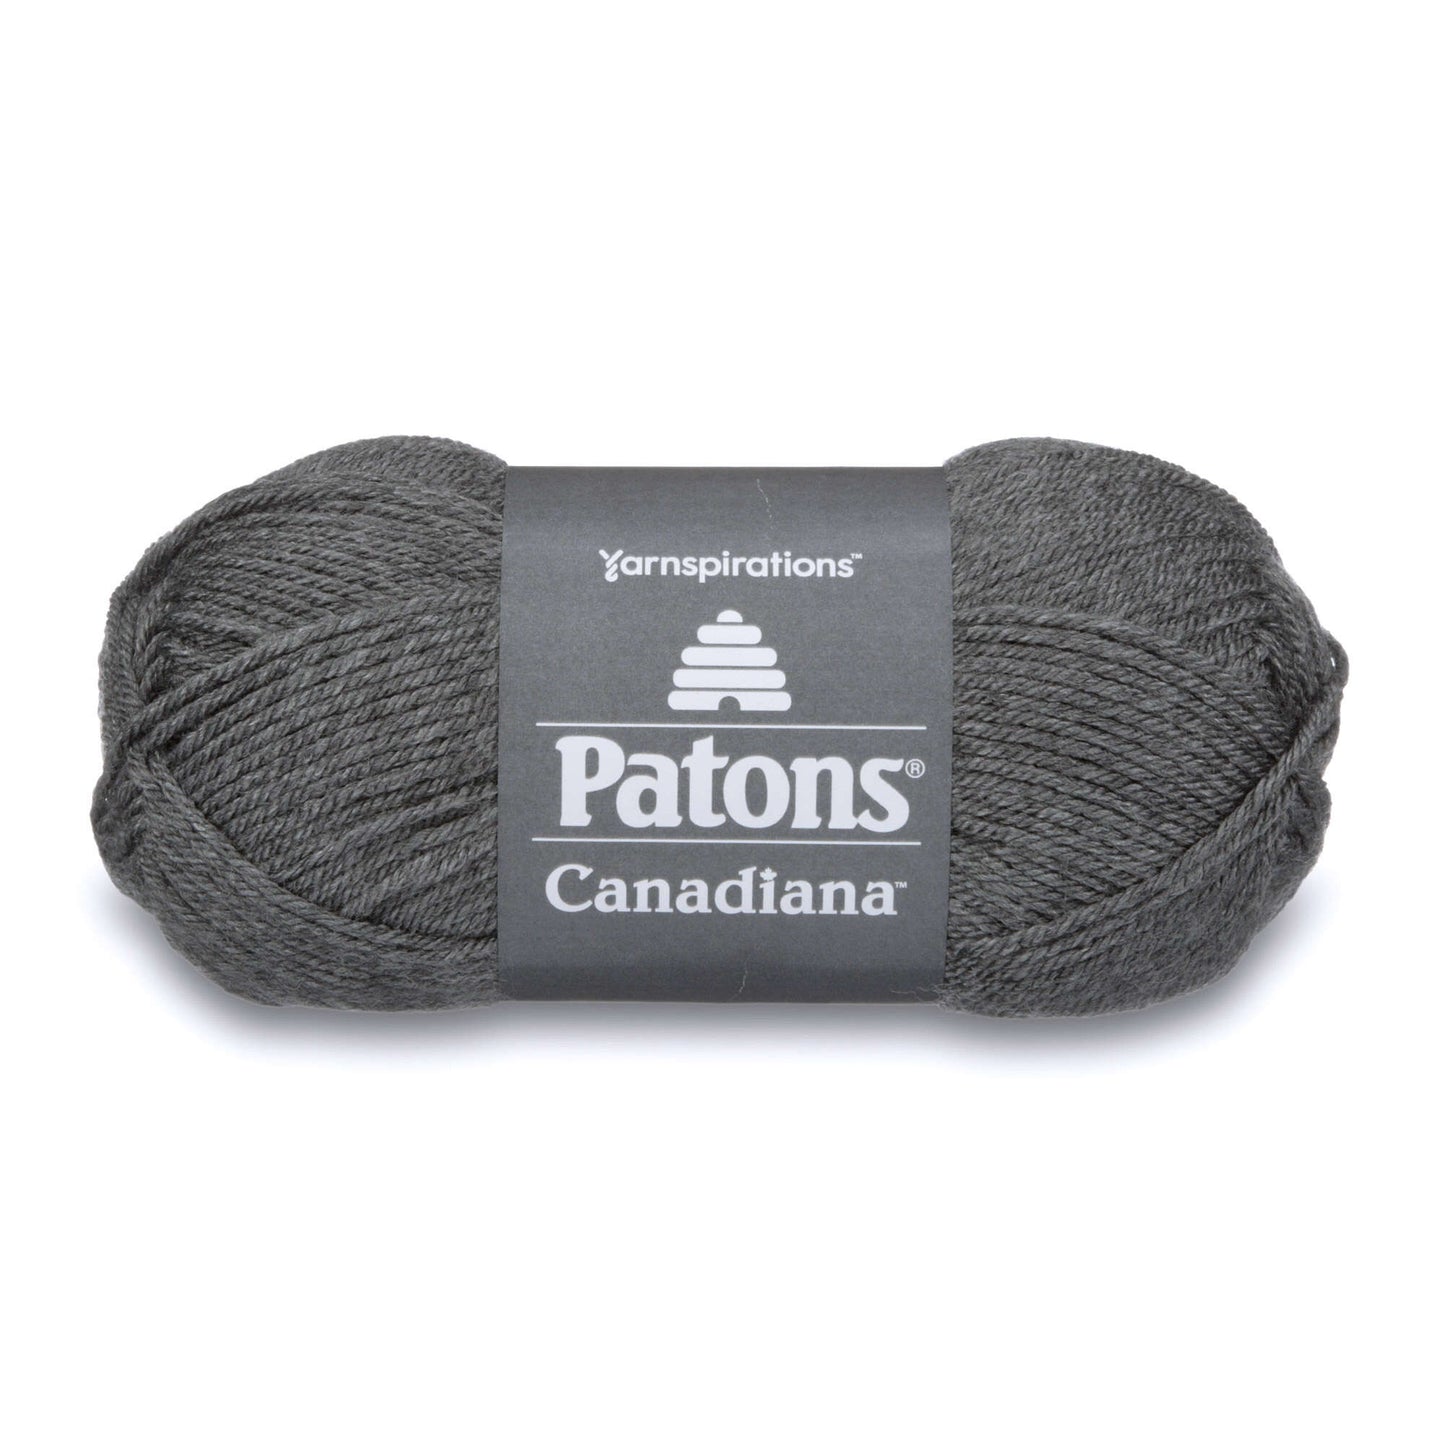 Patons® Canadiana - Medium Gray Mix